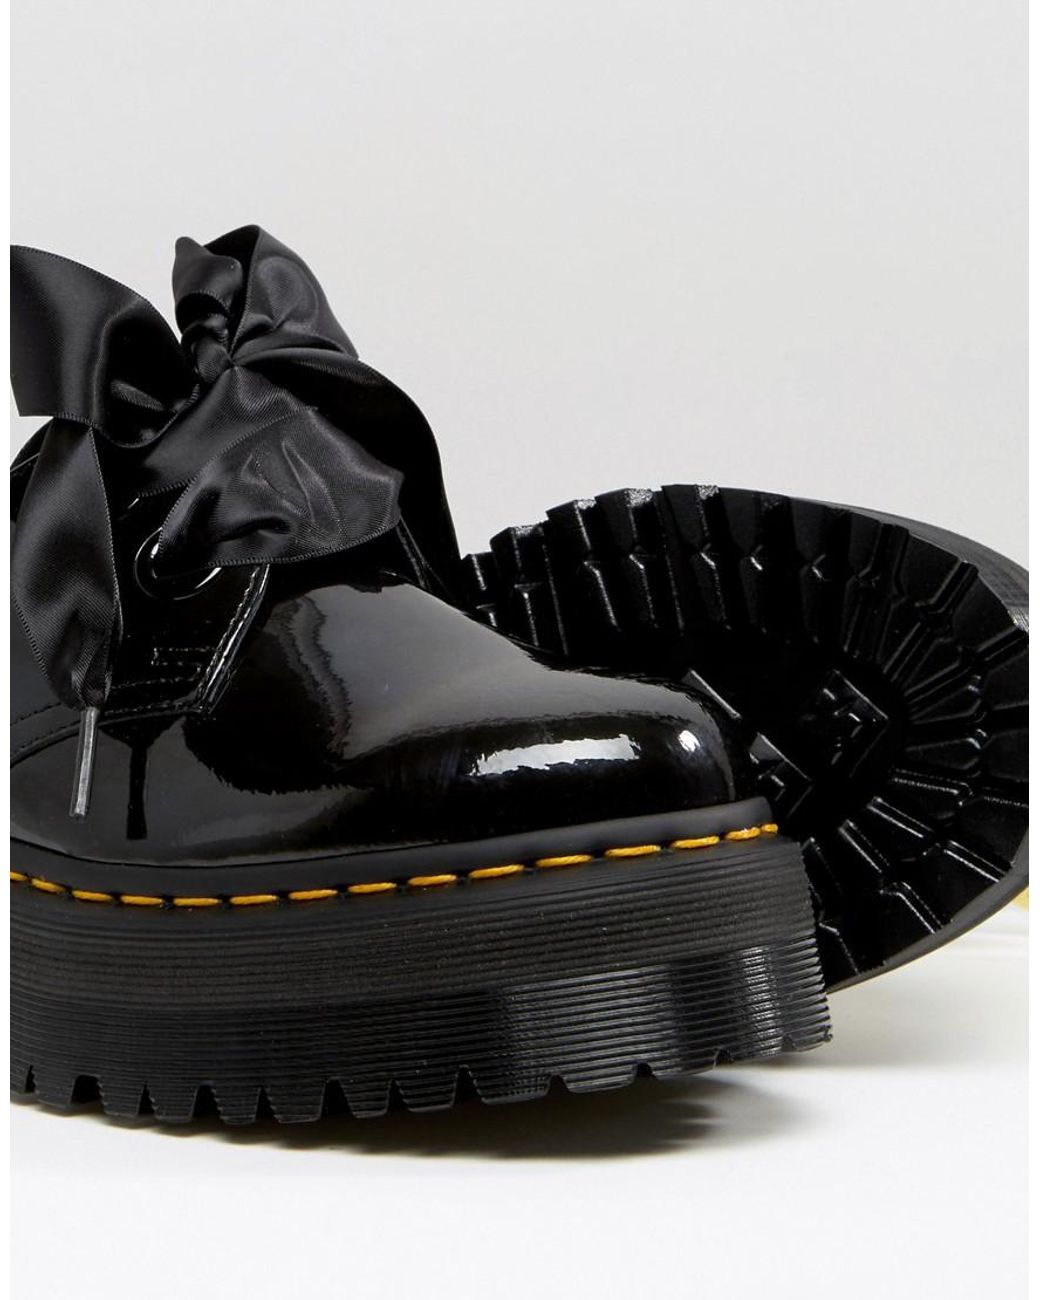 Dr. Martens Holly Ribbon Flatform Shoes - Black Patent Lamper | Lyst